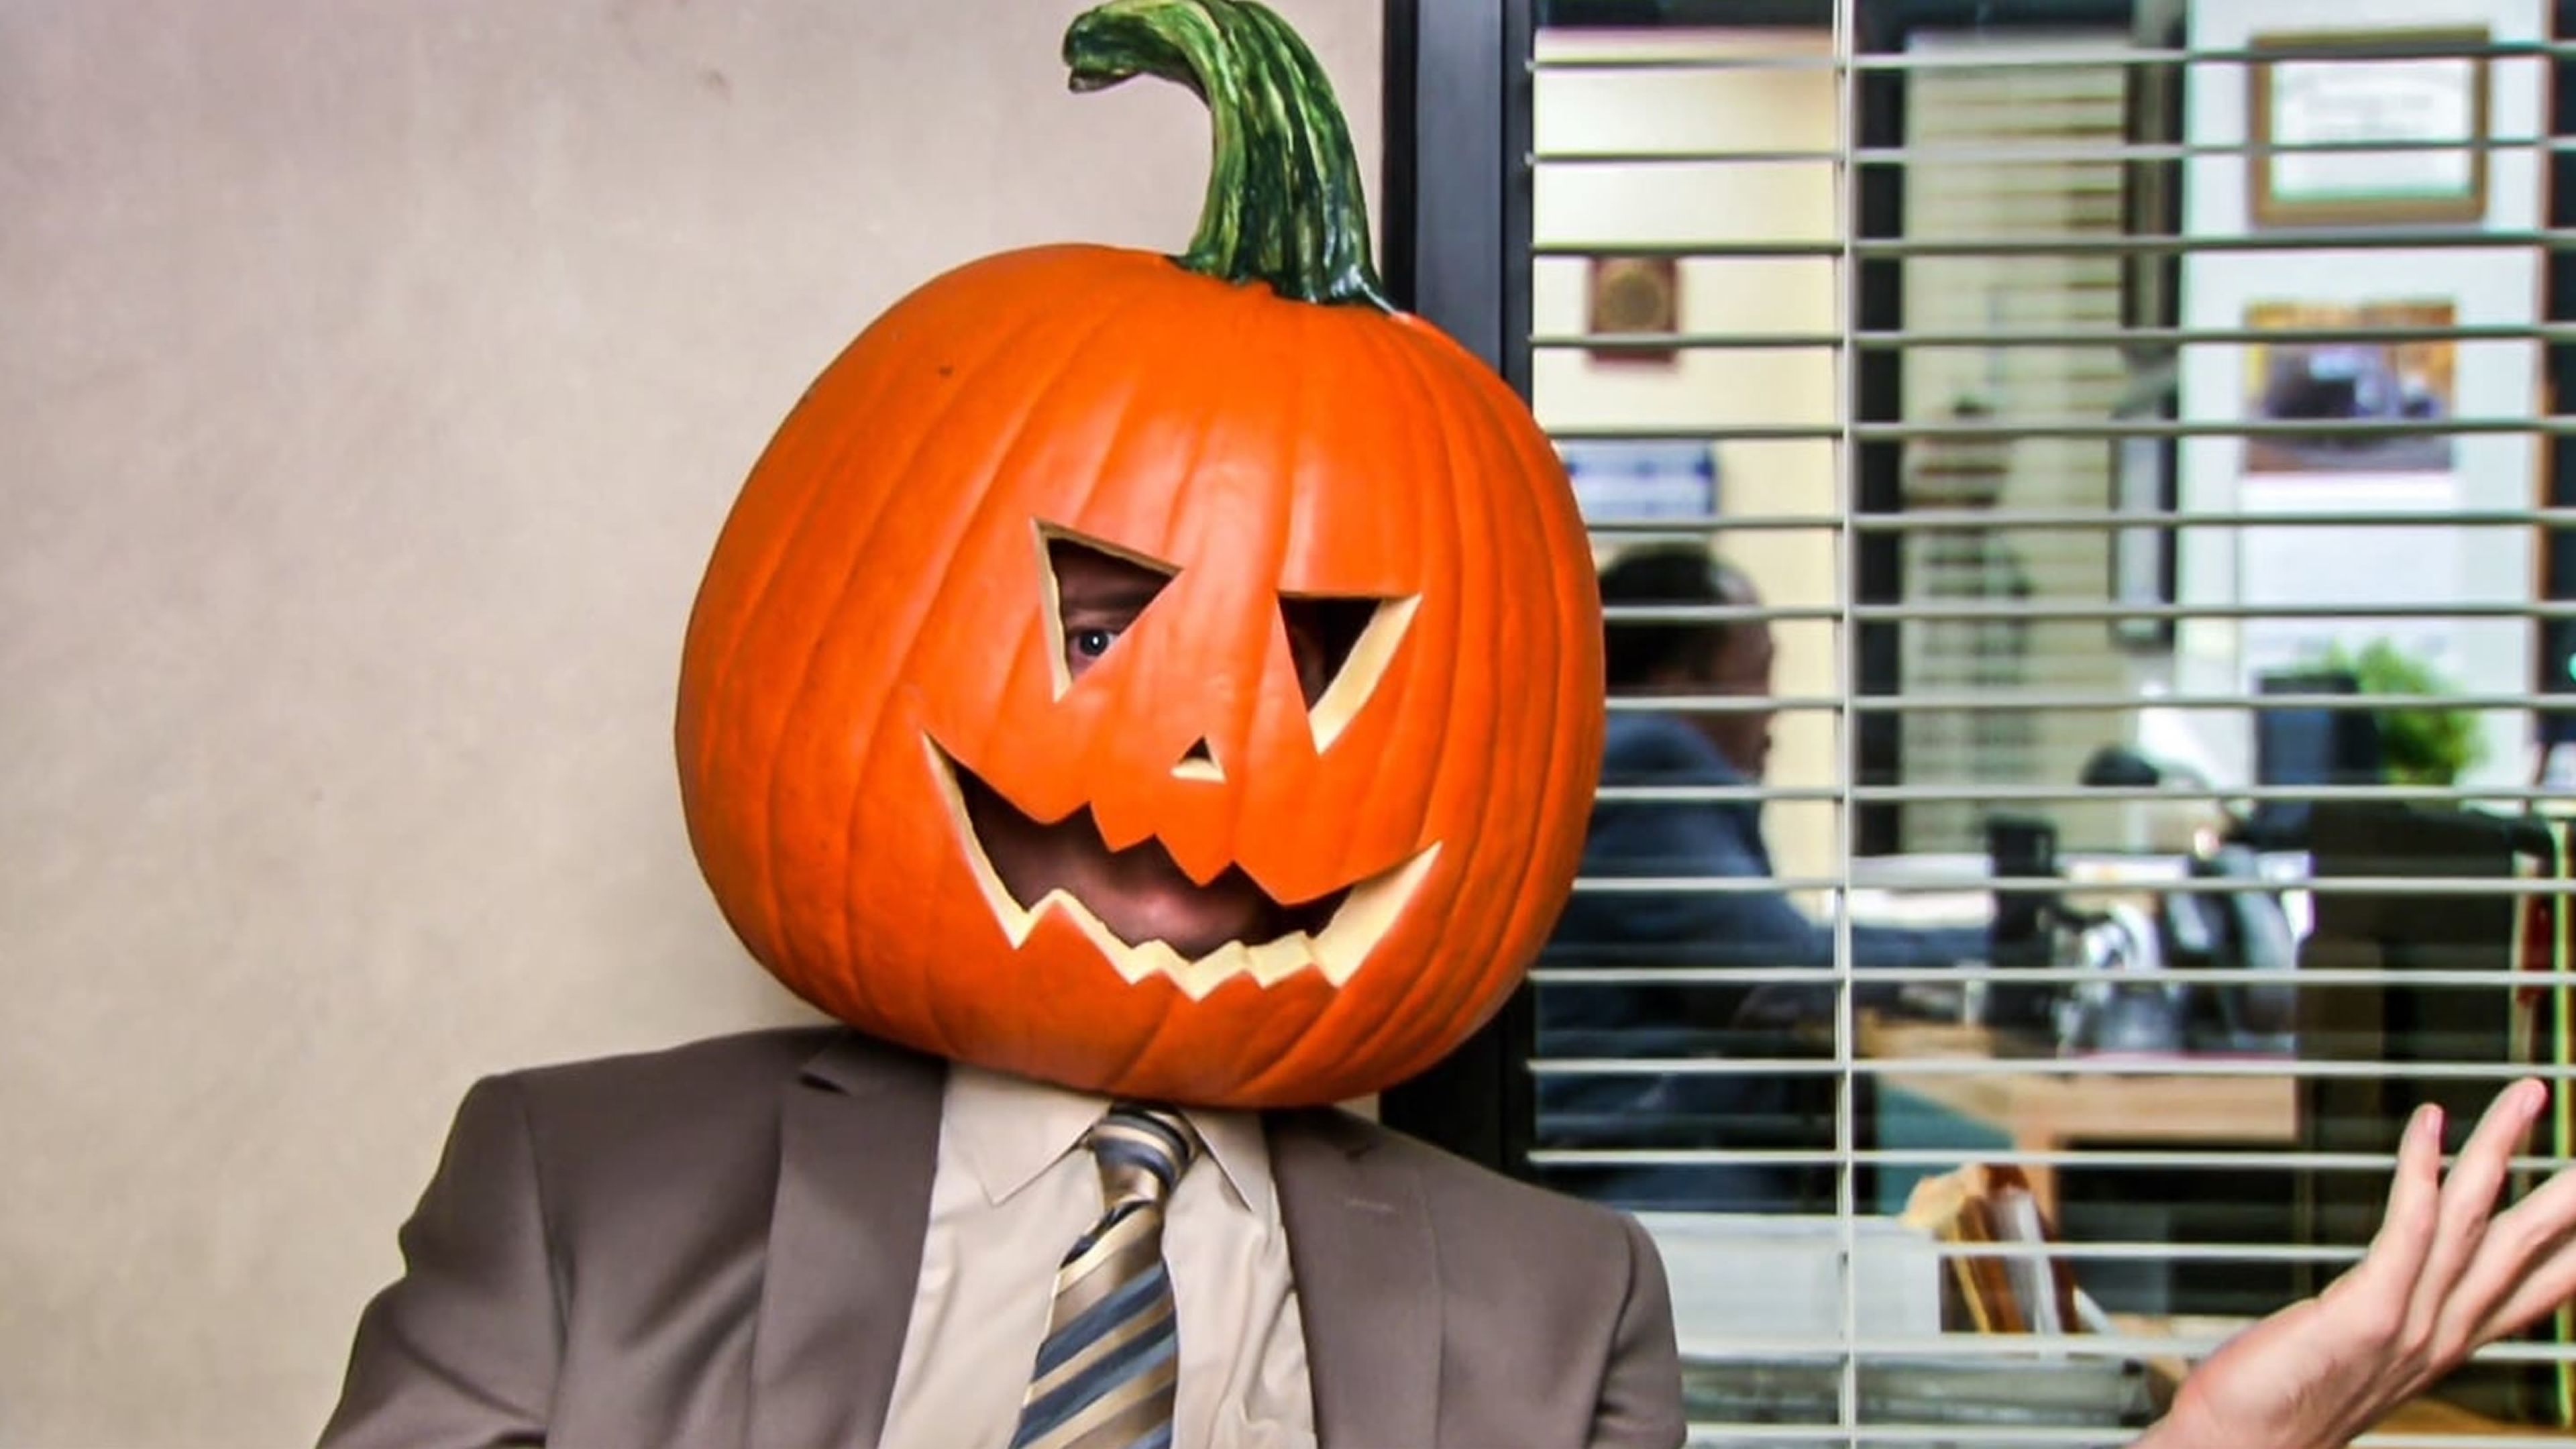 The Office - Halloween